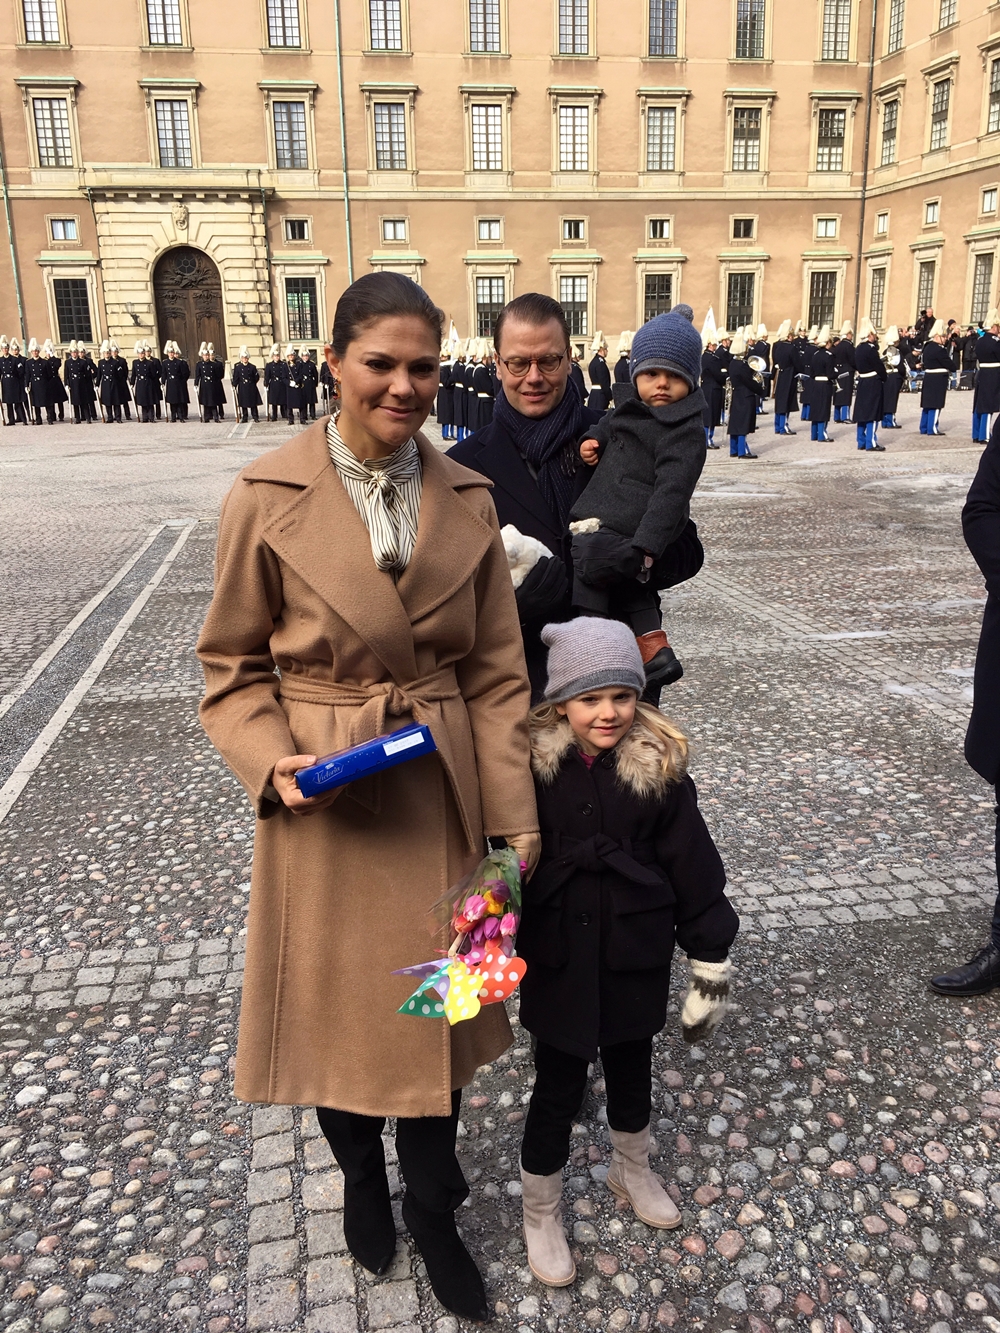 Mesés találkozás: magyar kislány köszöntötte fel a hercegnőt - fotók